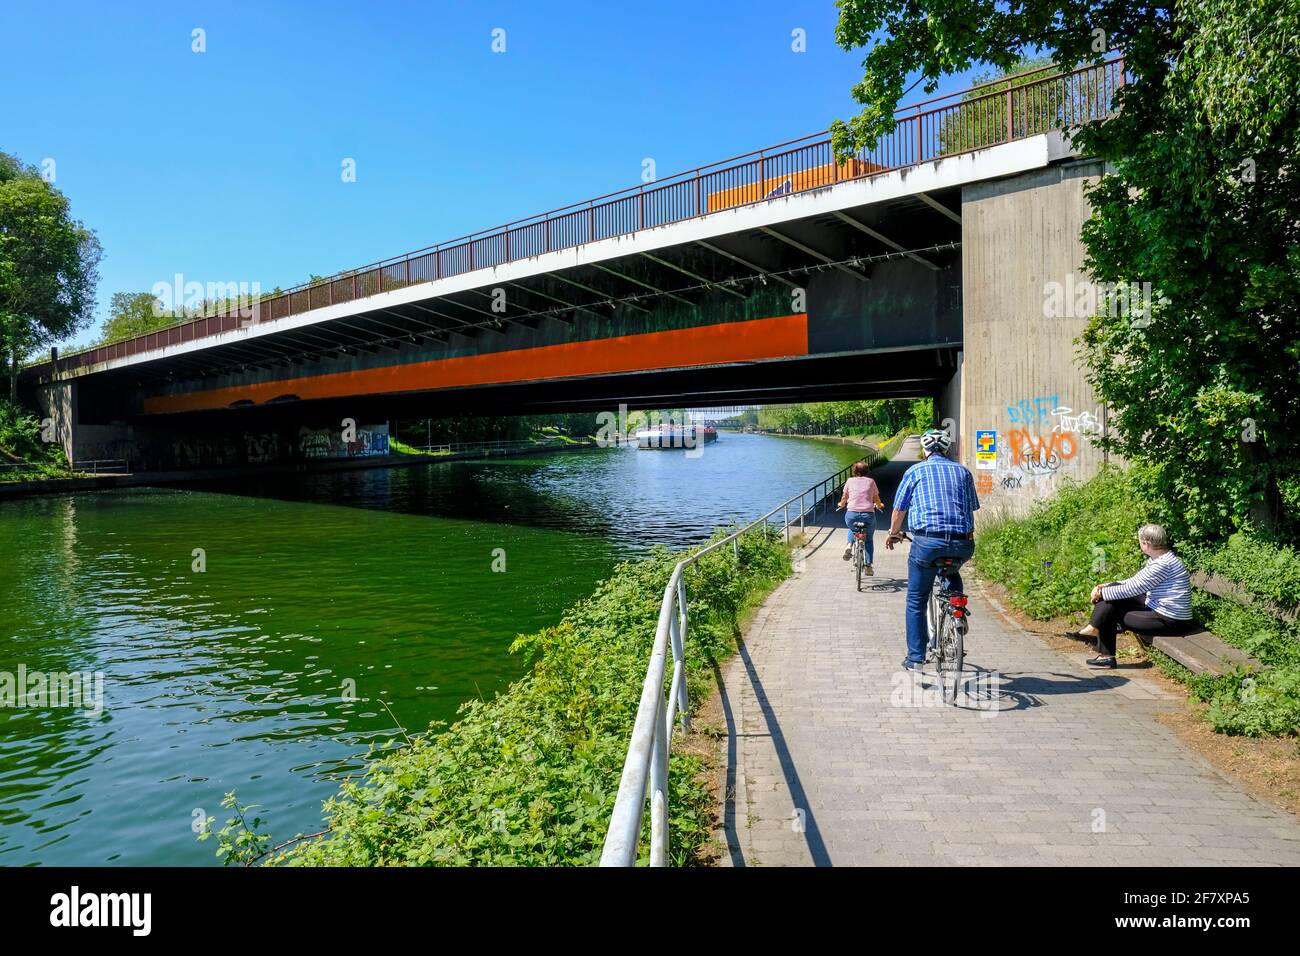 07.05.2020, Oberhausen, Renania del Norte Westfalia, Alemania - Radfahrer auf einem Weg unter der Sterkrader-Strasse-Bruecke am Rhein-Herne-Kanal en Oberha Foto de stock